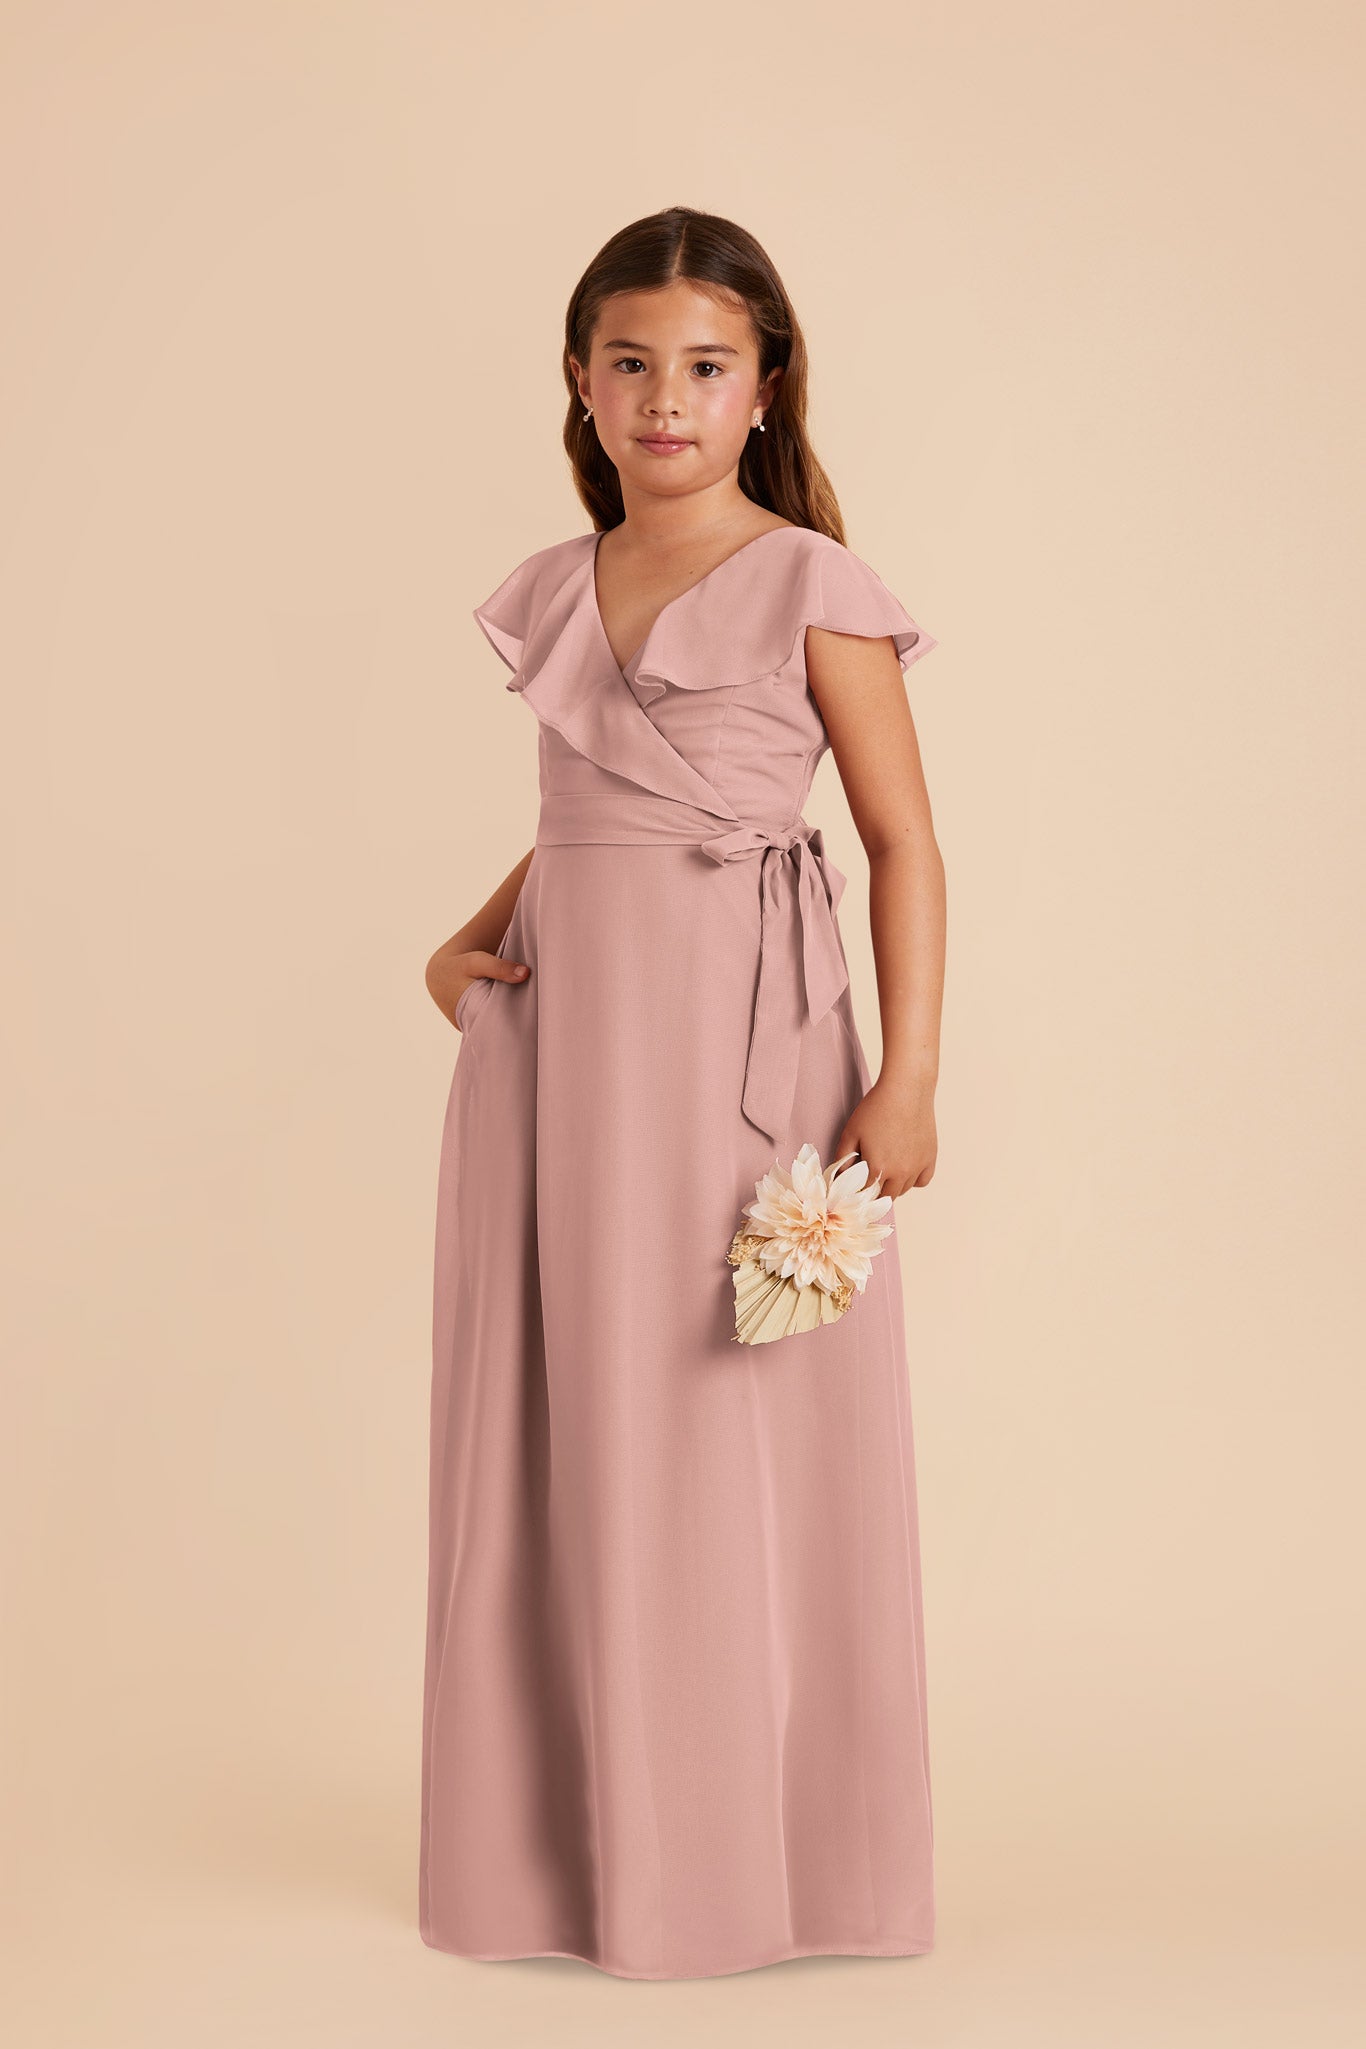 English Rose Jax Junior Chiffon Dress by Birdy Grey